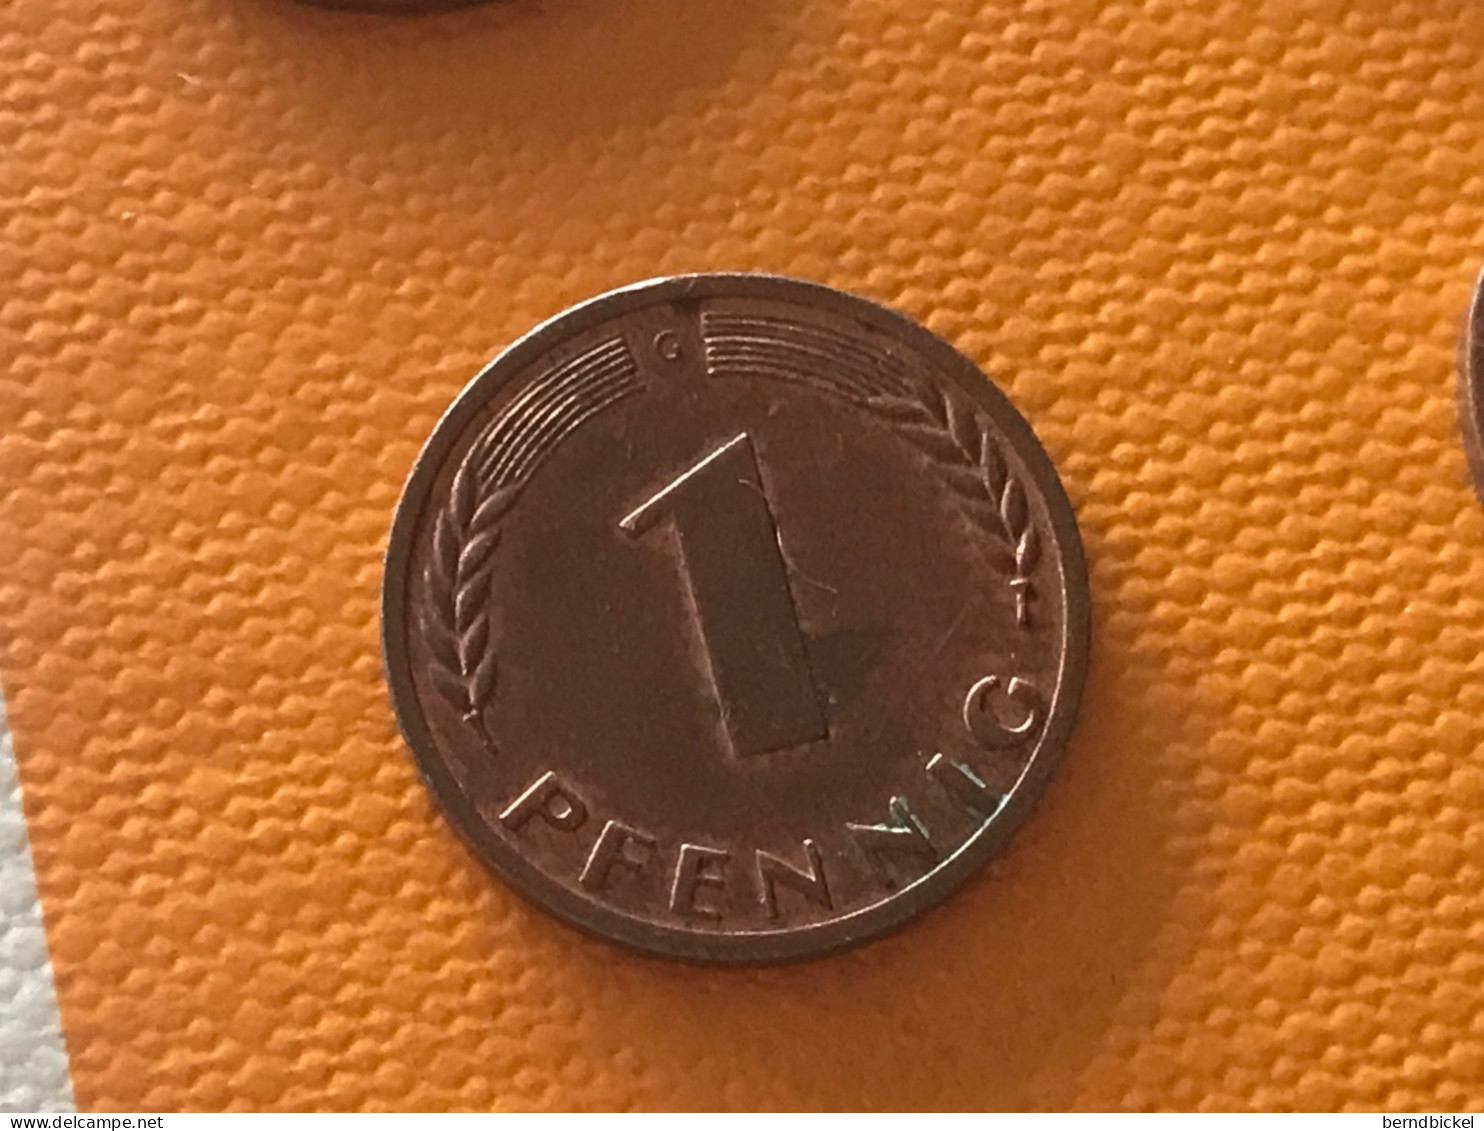 Münze Münzen Umlaufmünze Deutschland BRD 1 Pfennig 1970 Münzzeichen G - 1 Pfennig